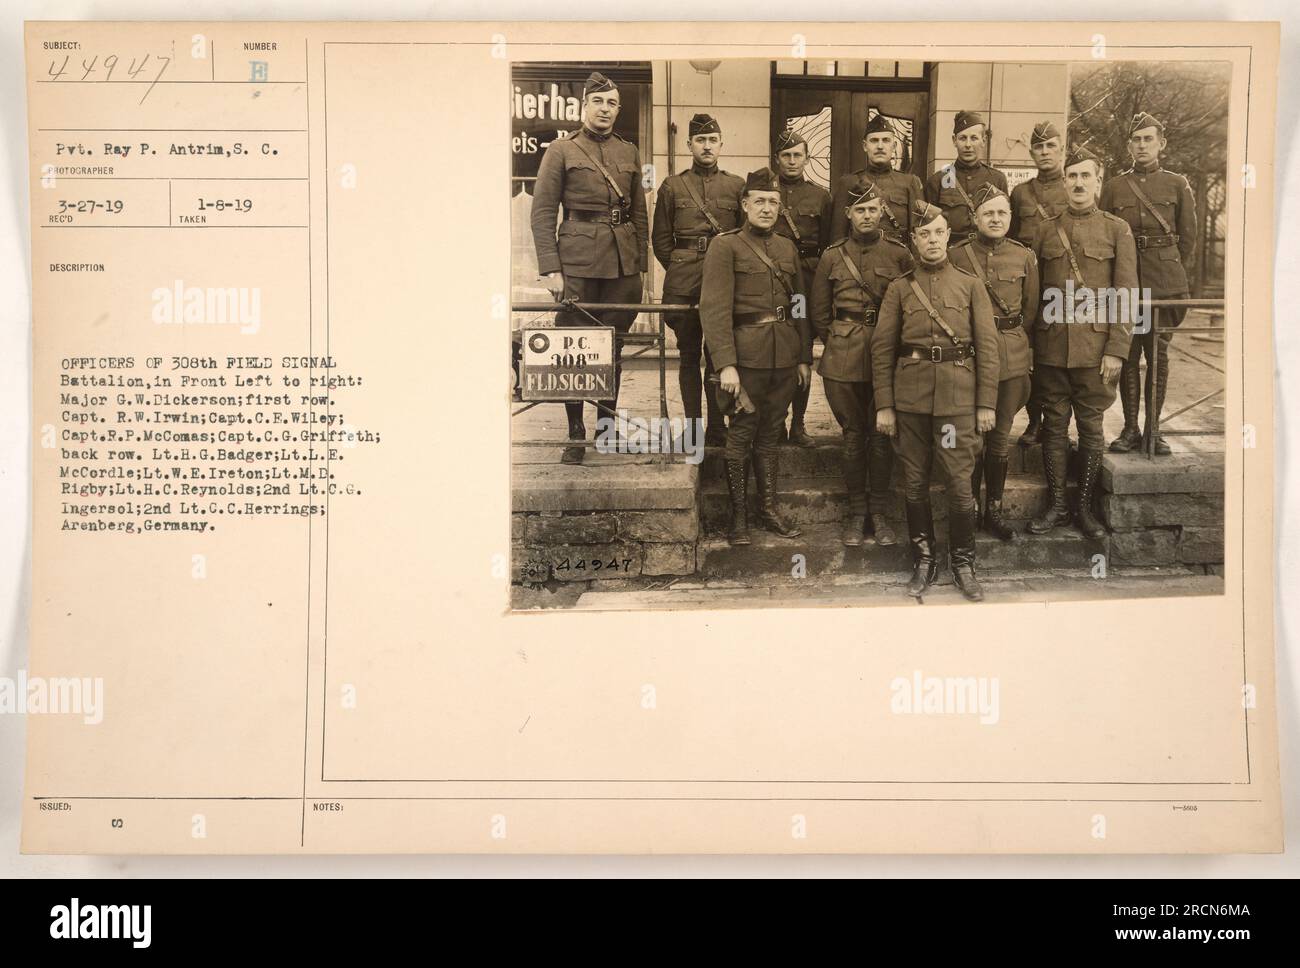 Questa immagine mostra gli ufficiali del 308th Field Signal Battalion, scattato il 6 gennaio 1919 ad Arenberg, in Germania. Da sinistra a destra in prima fila: Major G.W. Dickerson, capitano R.W. Irwin, capitano C.F. Wiley, Capitano R.P. McComas, capitano C.G. Griffeth. Fila posteriore: Tenente H.G. Badger, tenente L.E. McCordle, tenente W.E. Ireton, tenente M.D. Rigby, tenente H.C. Reynolds, 2° tenente C.G. Ingersol, 2° tenente c.c. Herrings. Foto Stock